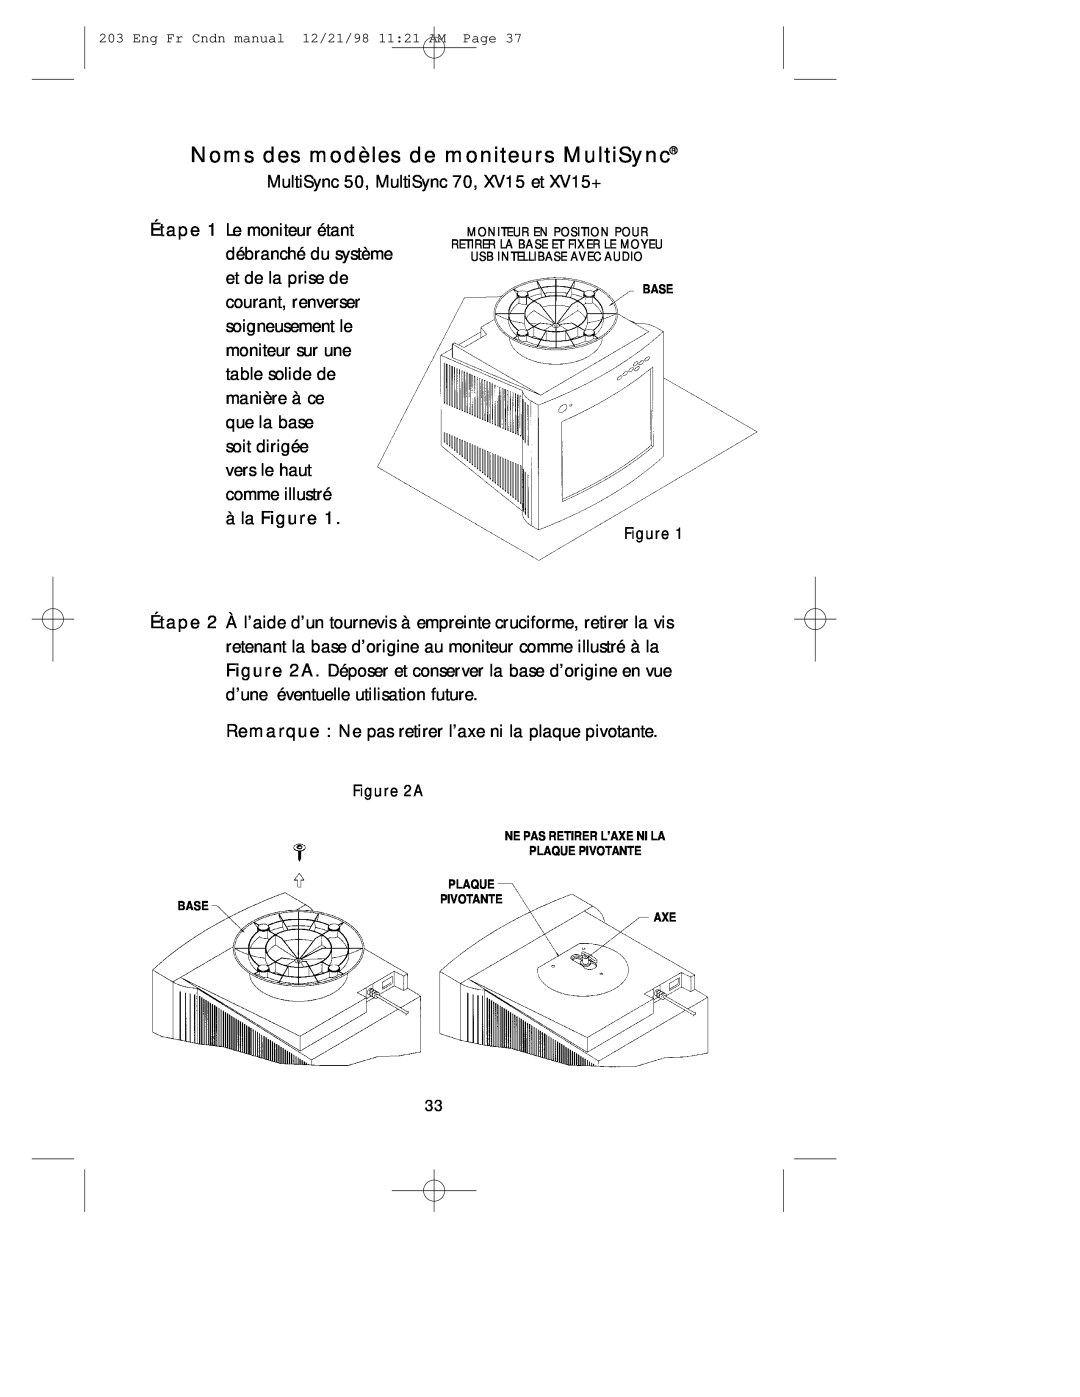 NEC USB user manual Noms des modèles de moniteurs MultiSync, àla Figure 